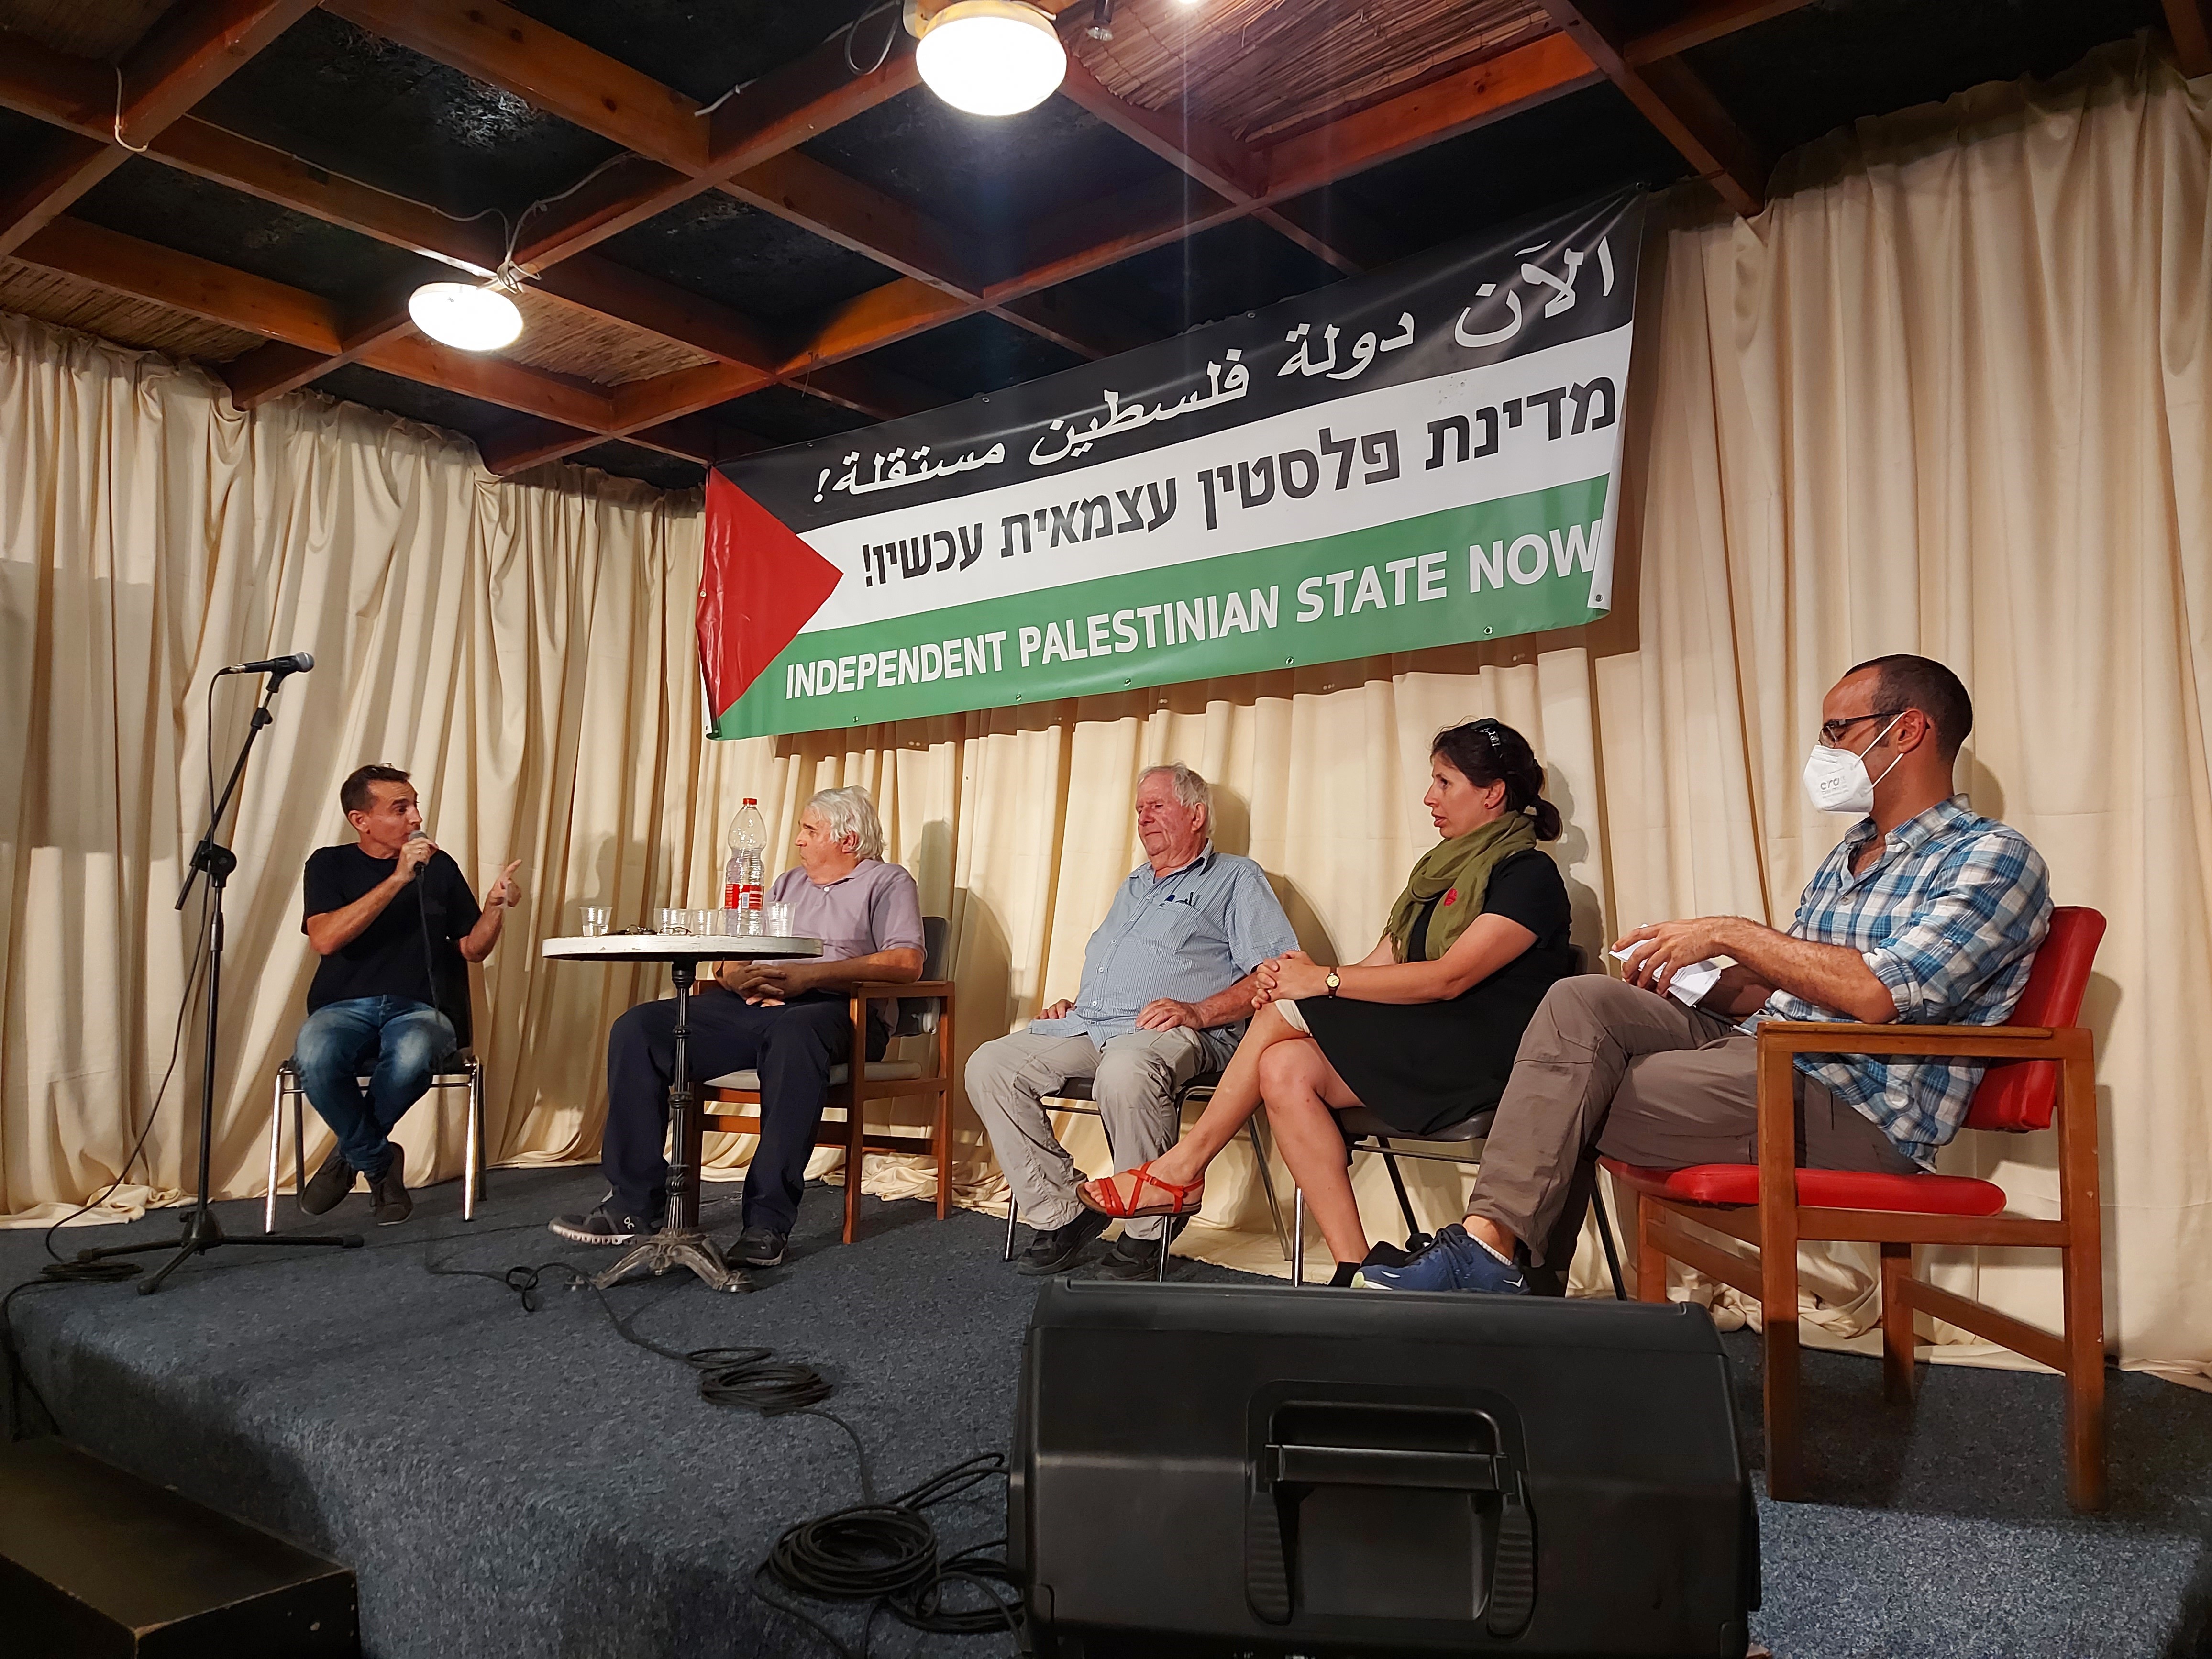 בת”א נערך הכנס הראשון של היוזמה “מדינת פלסטין עכשיו” בהשתתפות ישראלים ופלסטינים